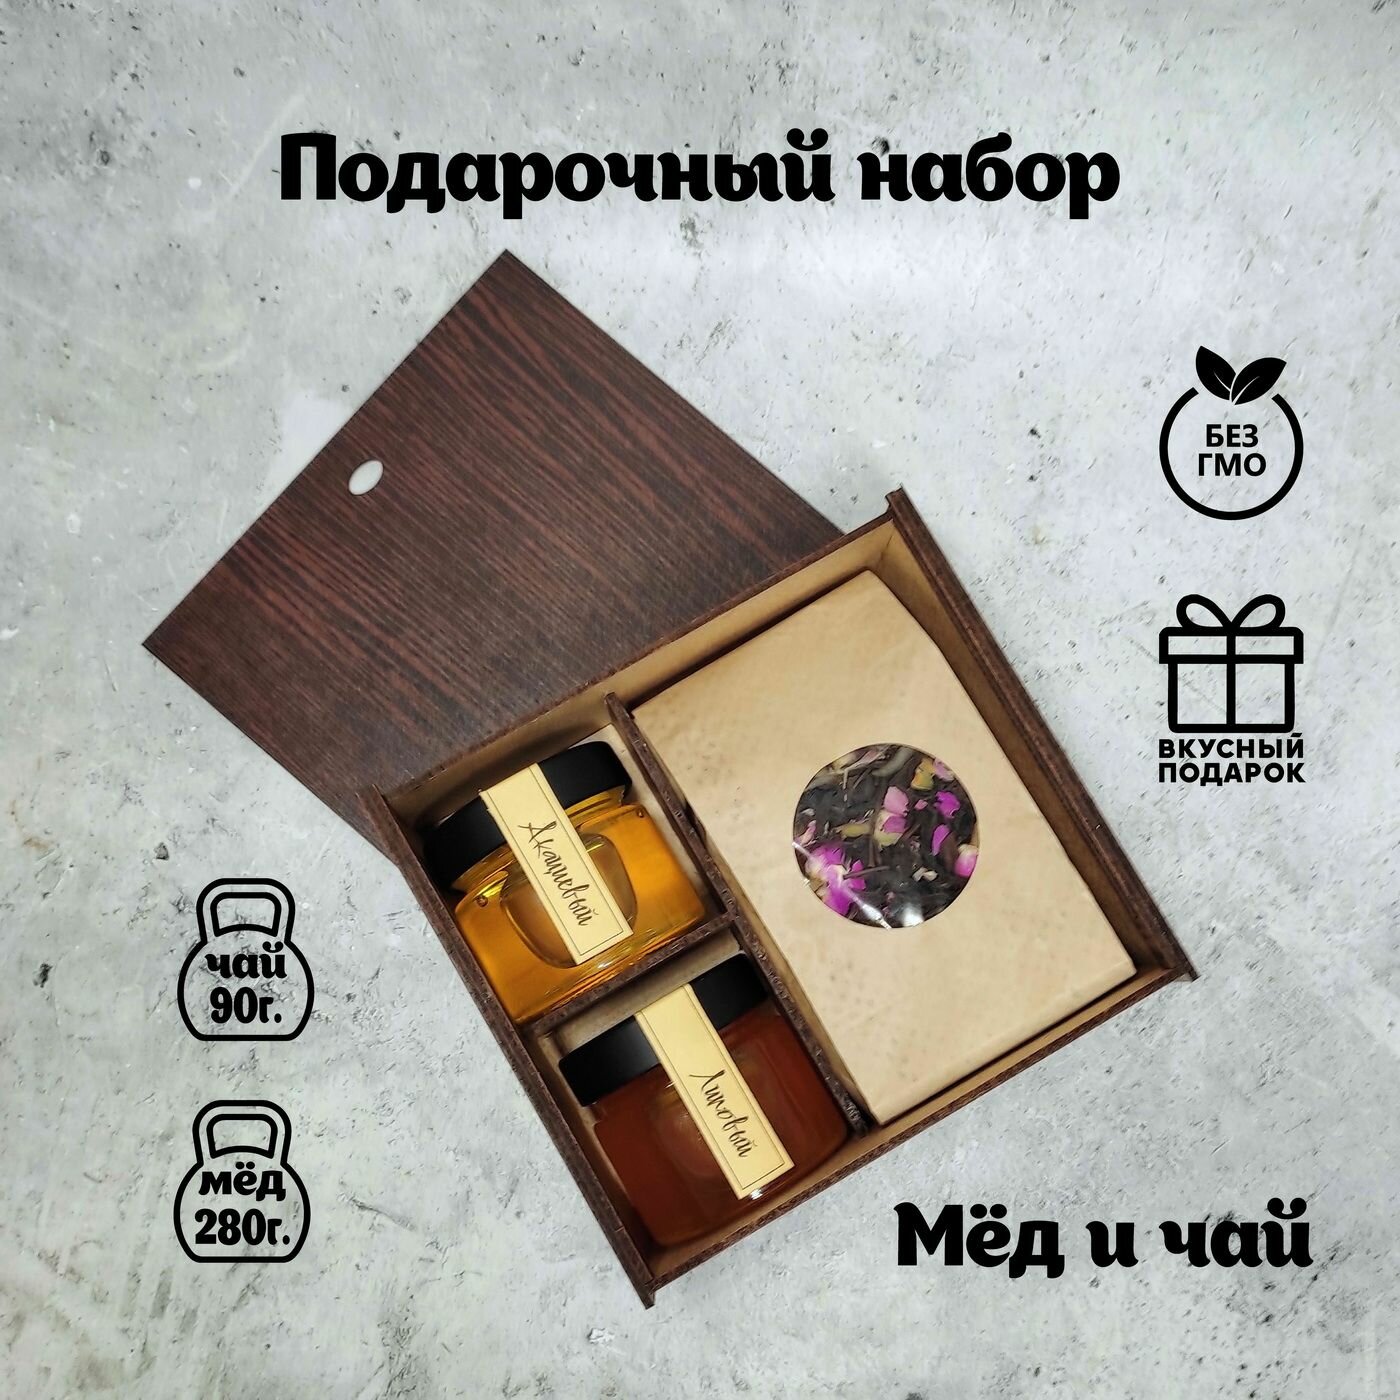 Подарочный набор "Чай и мед в деревянной коробке"